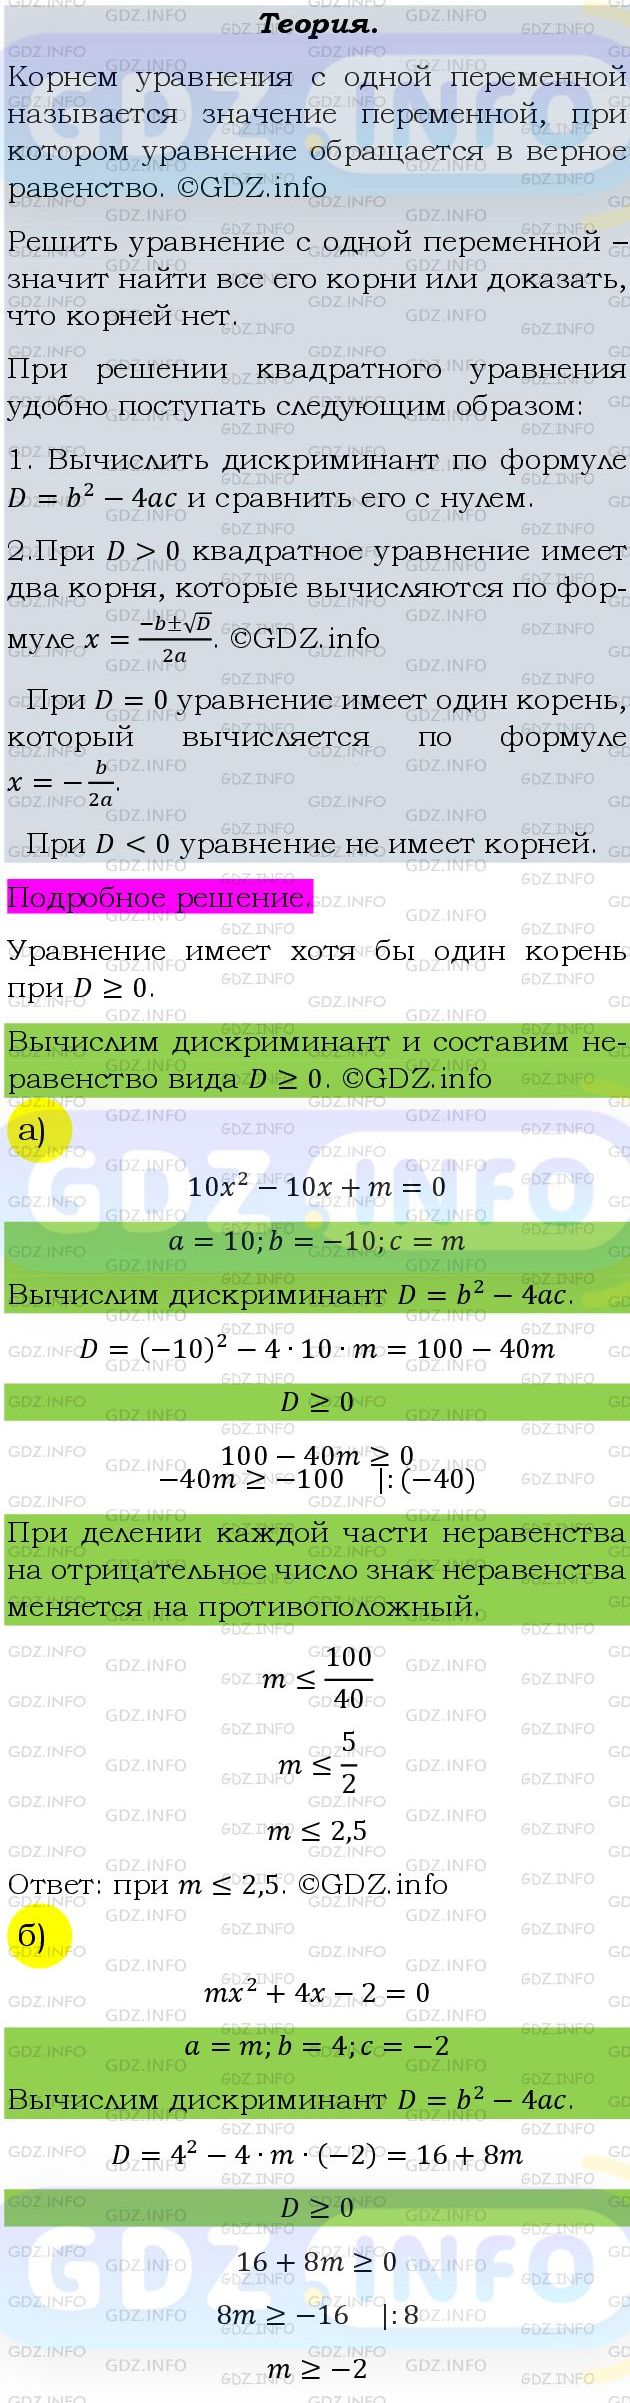 Фото подробного решения: Номер задания №730 из ГДЗ по Алгебре 9 класс: Макарычев Ю.Н.